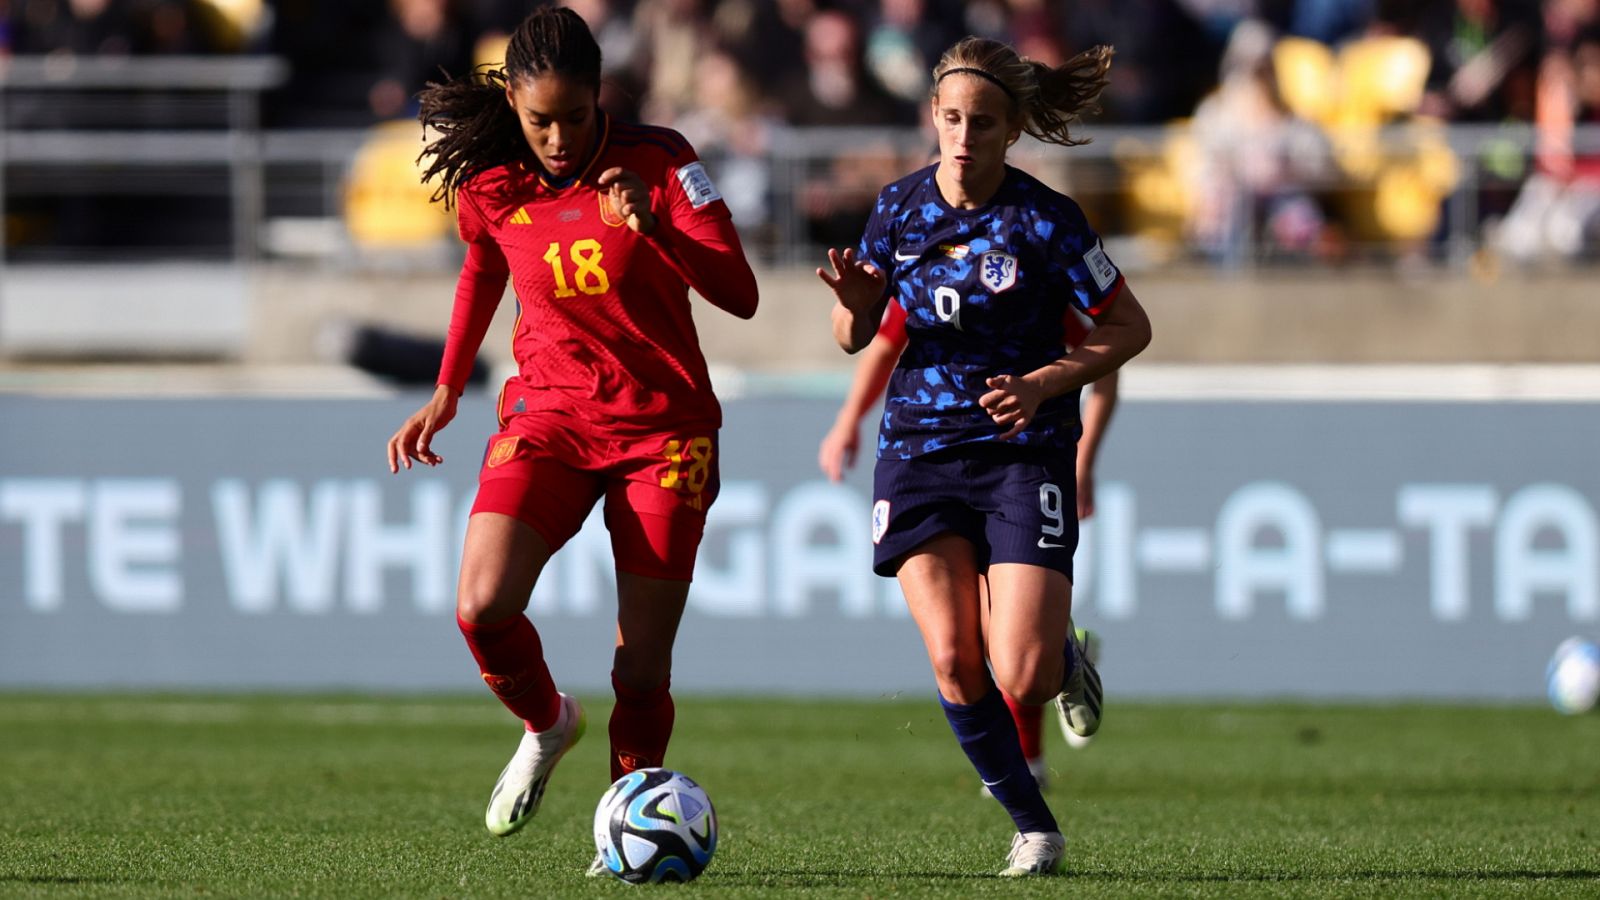 Fútbol - Copa Mundial femenina de la FIFA 2023. 1/4 Final: España - Países Bajos